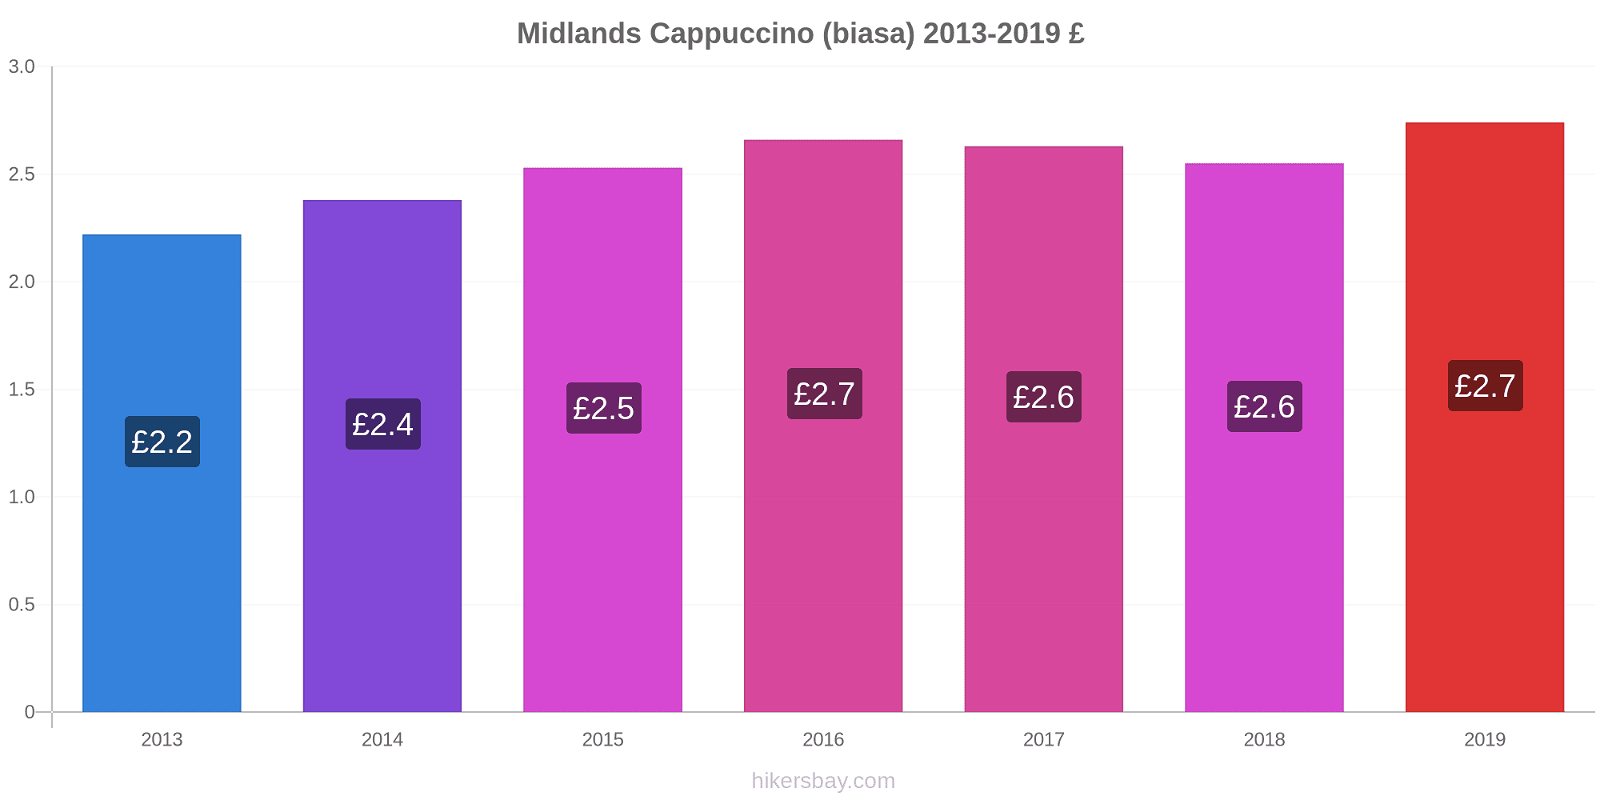 Midlands perubahan harga Cappuccino (biasa) hikersbay.com